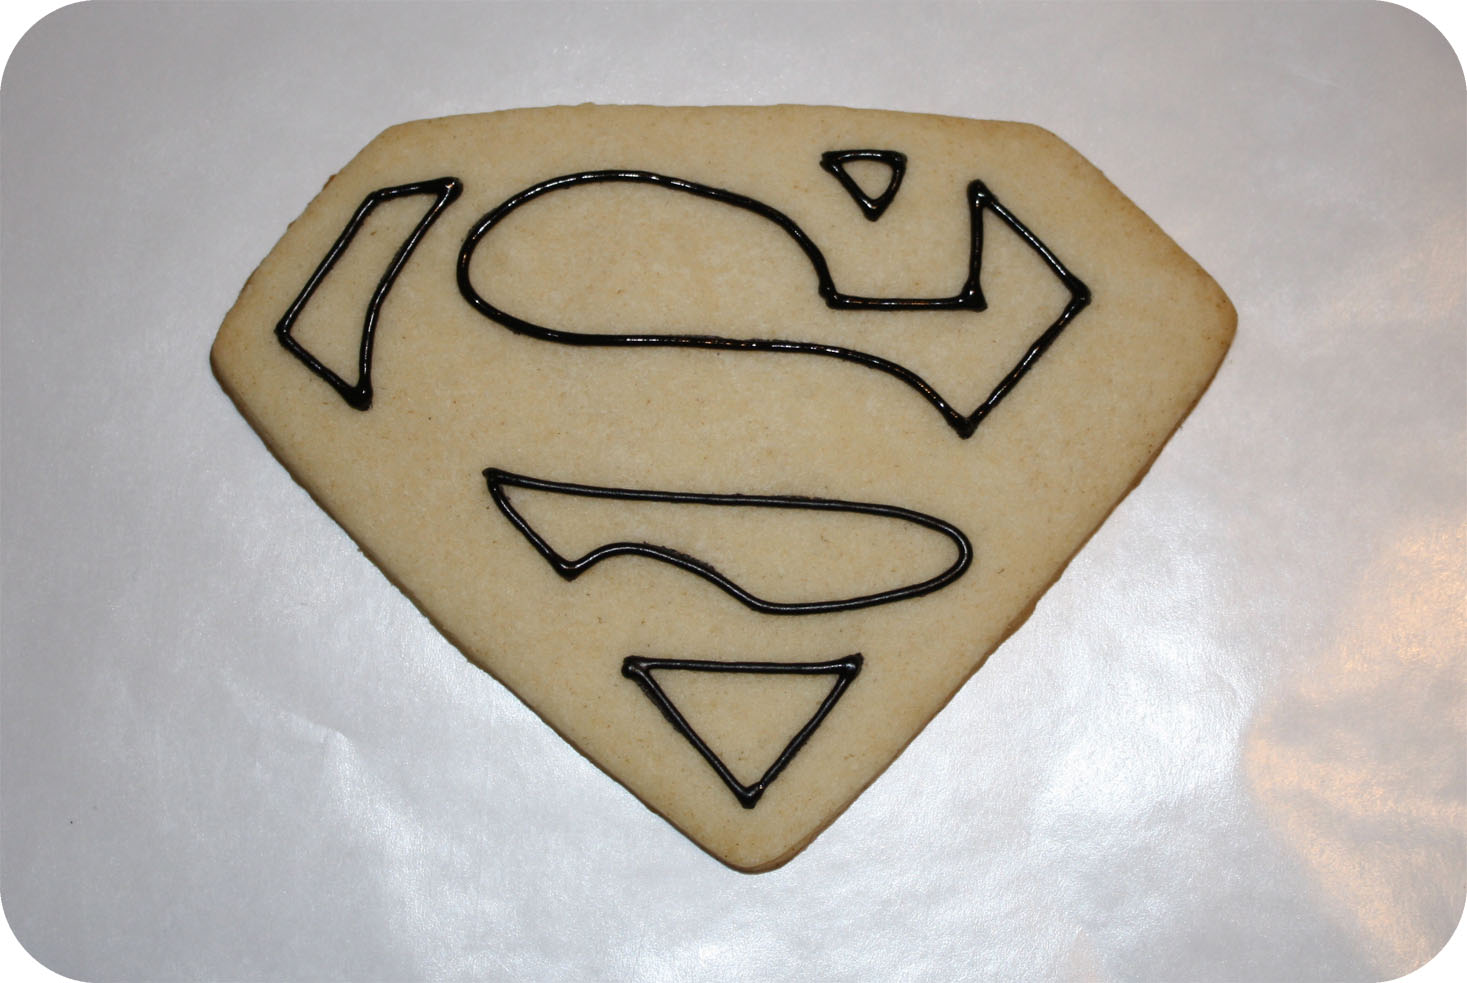 Superman Cookies